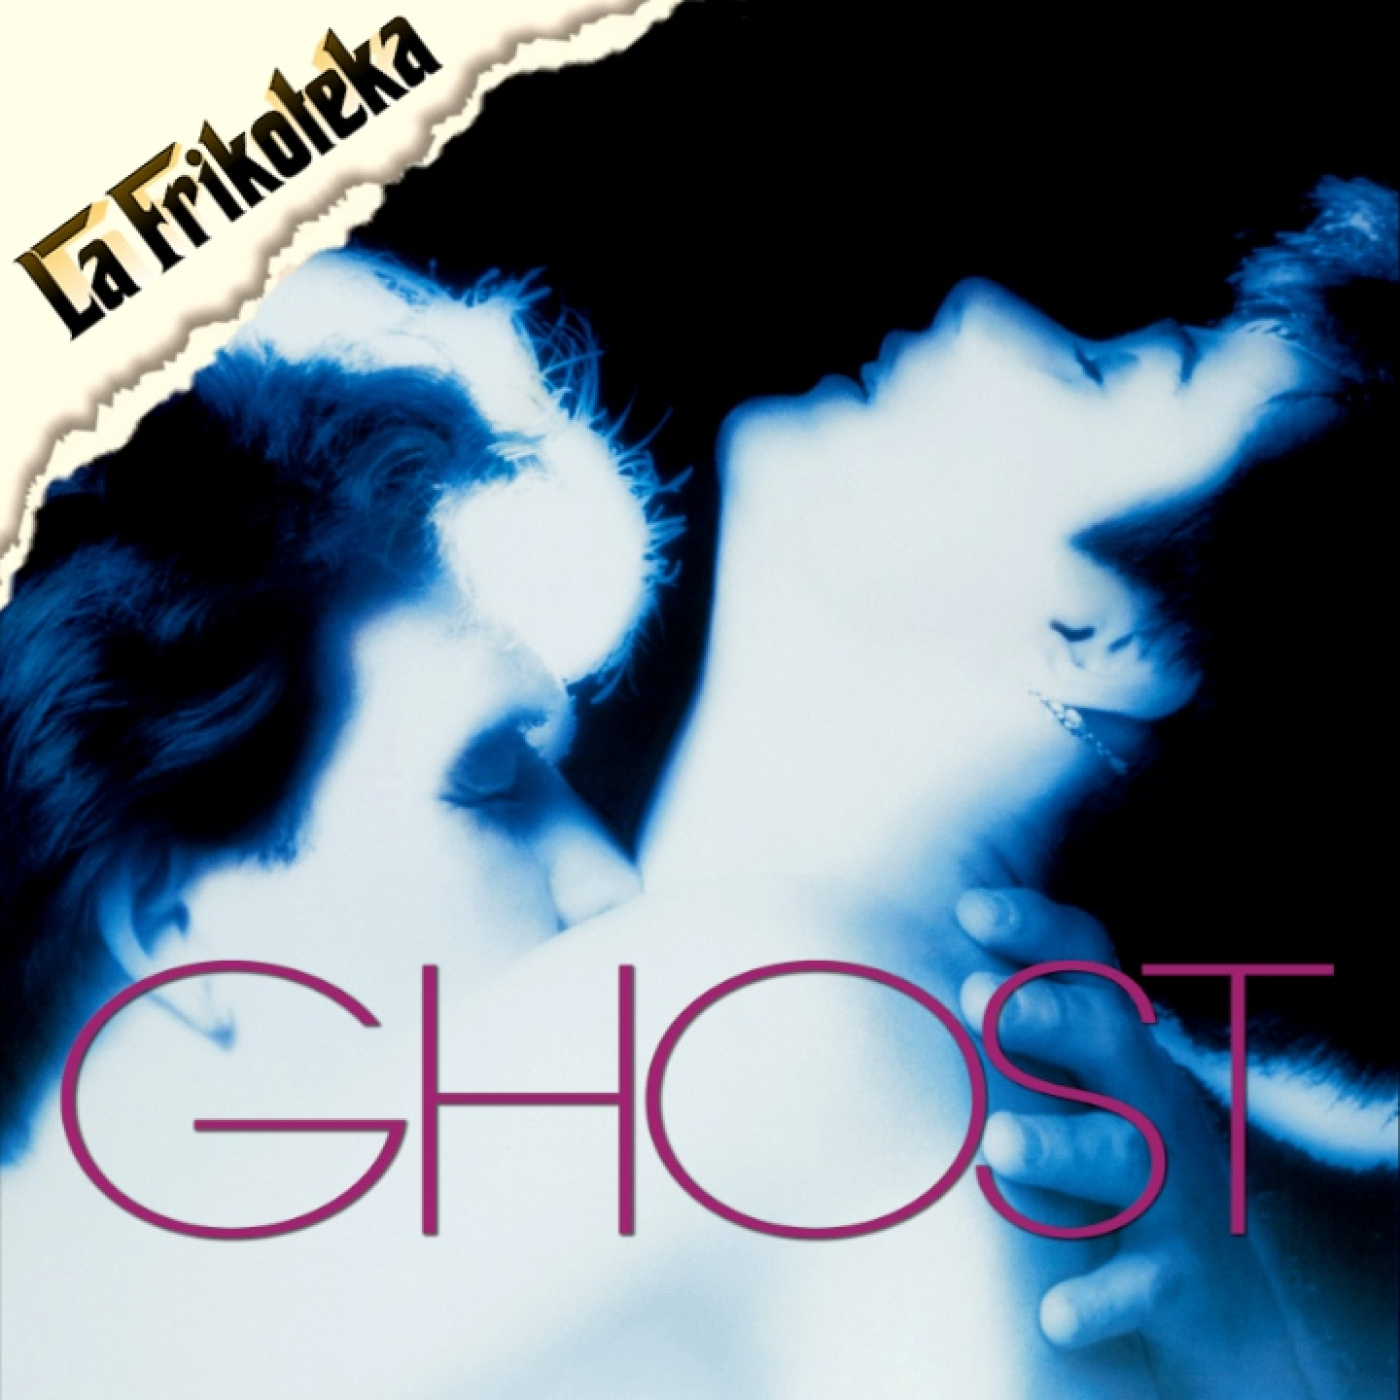 166 - Ghost, más allá del amor (1990) - Episodio exclusivo para mecenas